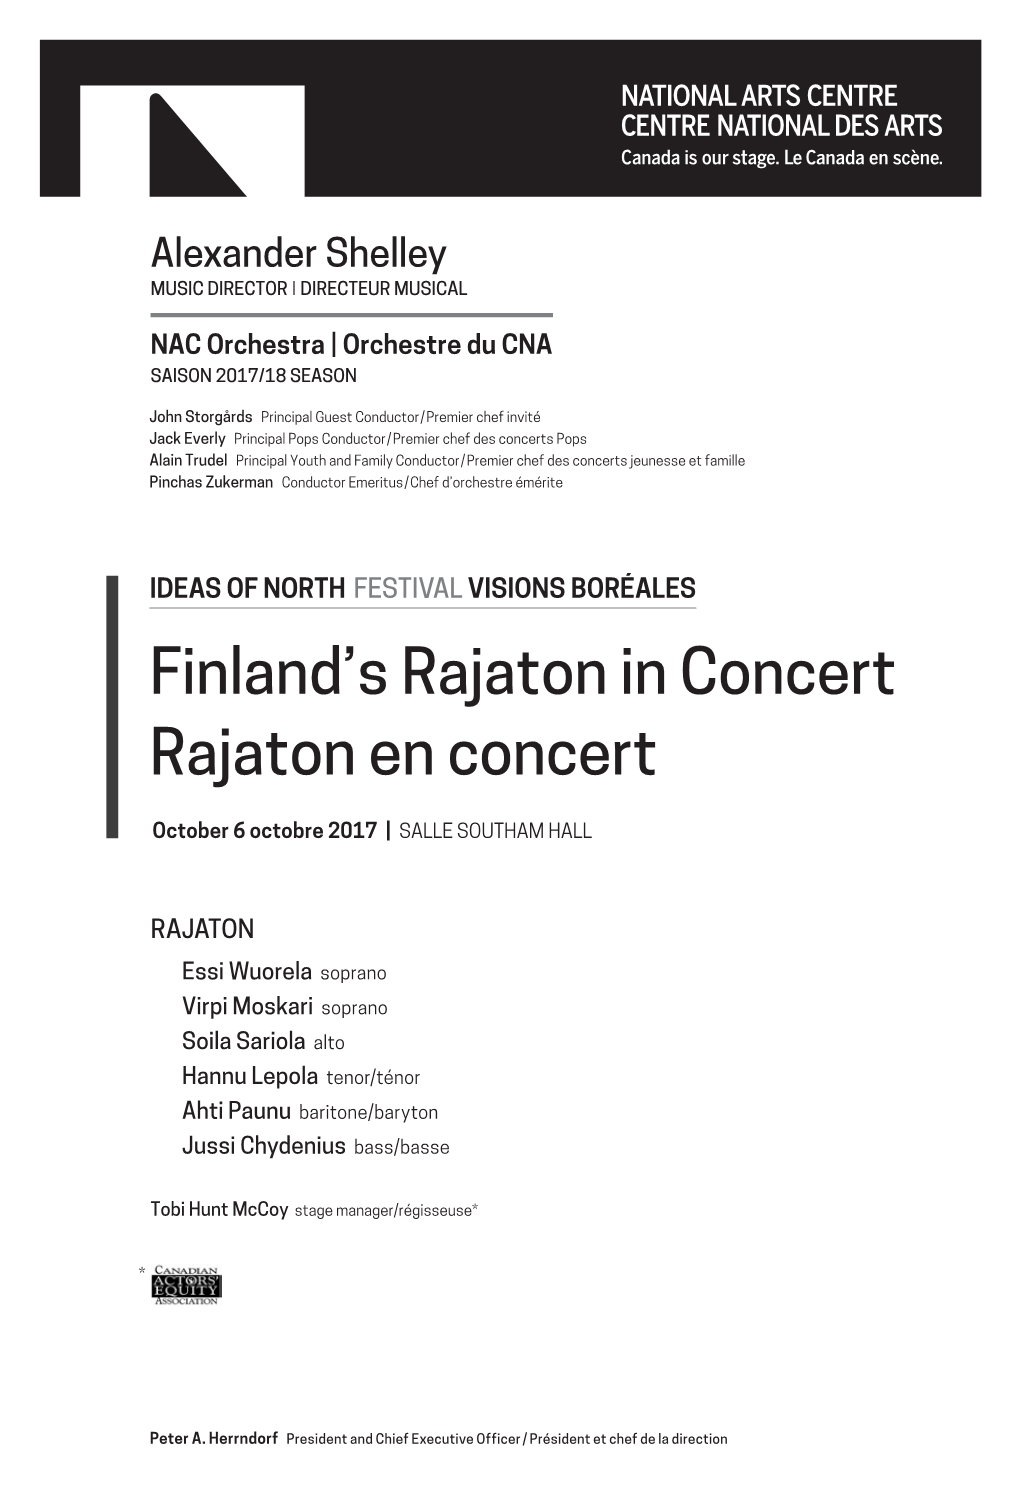 Finland's Rajaton in Concert Rajaton En Concert